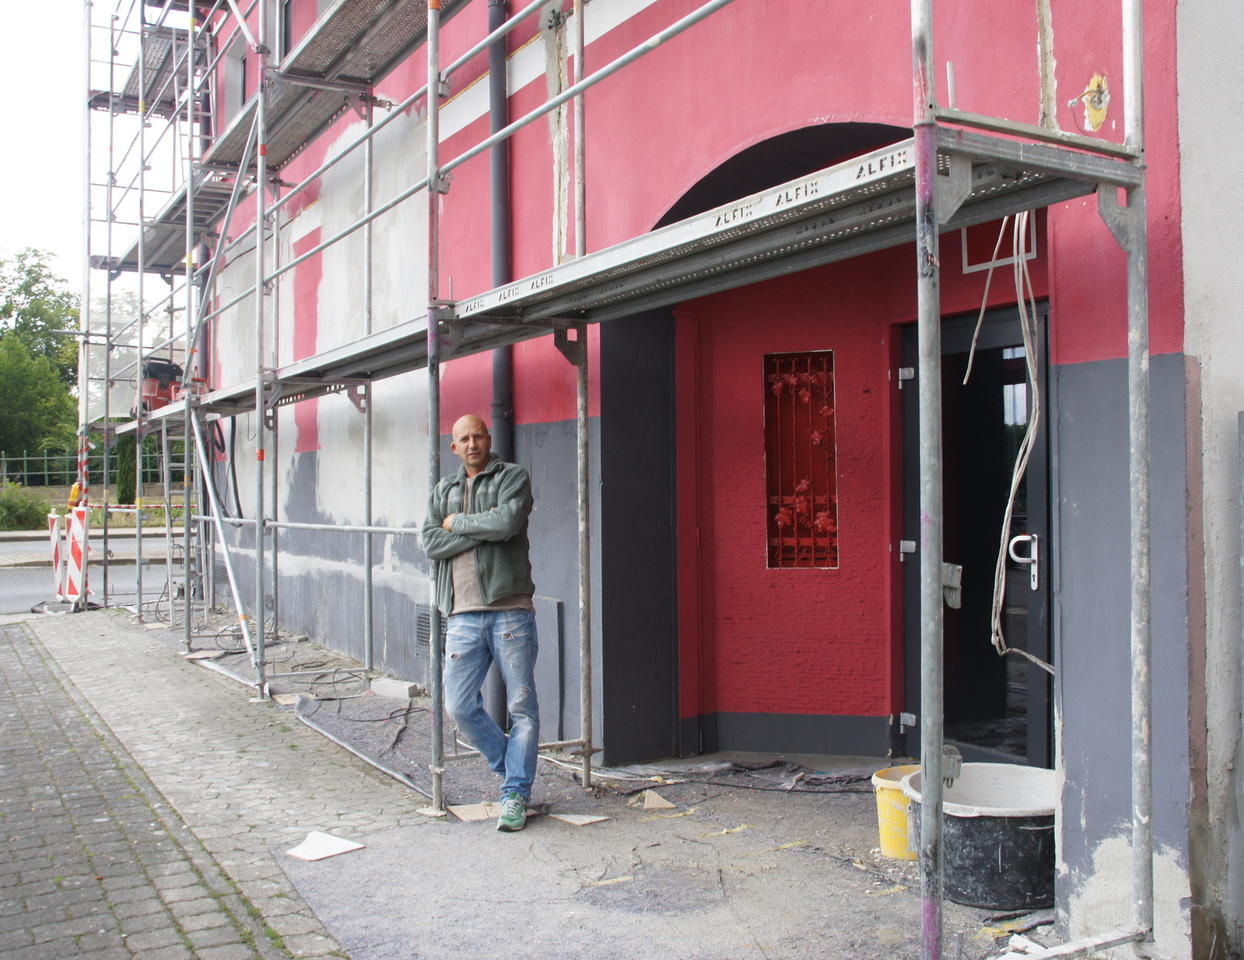  quot Milieu quot mit Stil Capri Bar in Bad Kreuznach soll wieder Kult Laden werden Oeffentlicher 